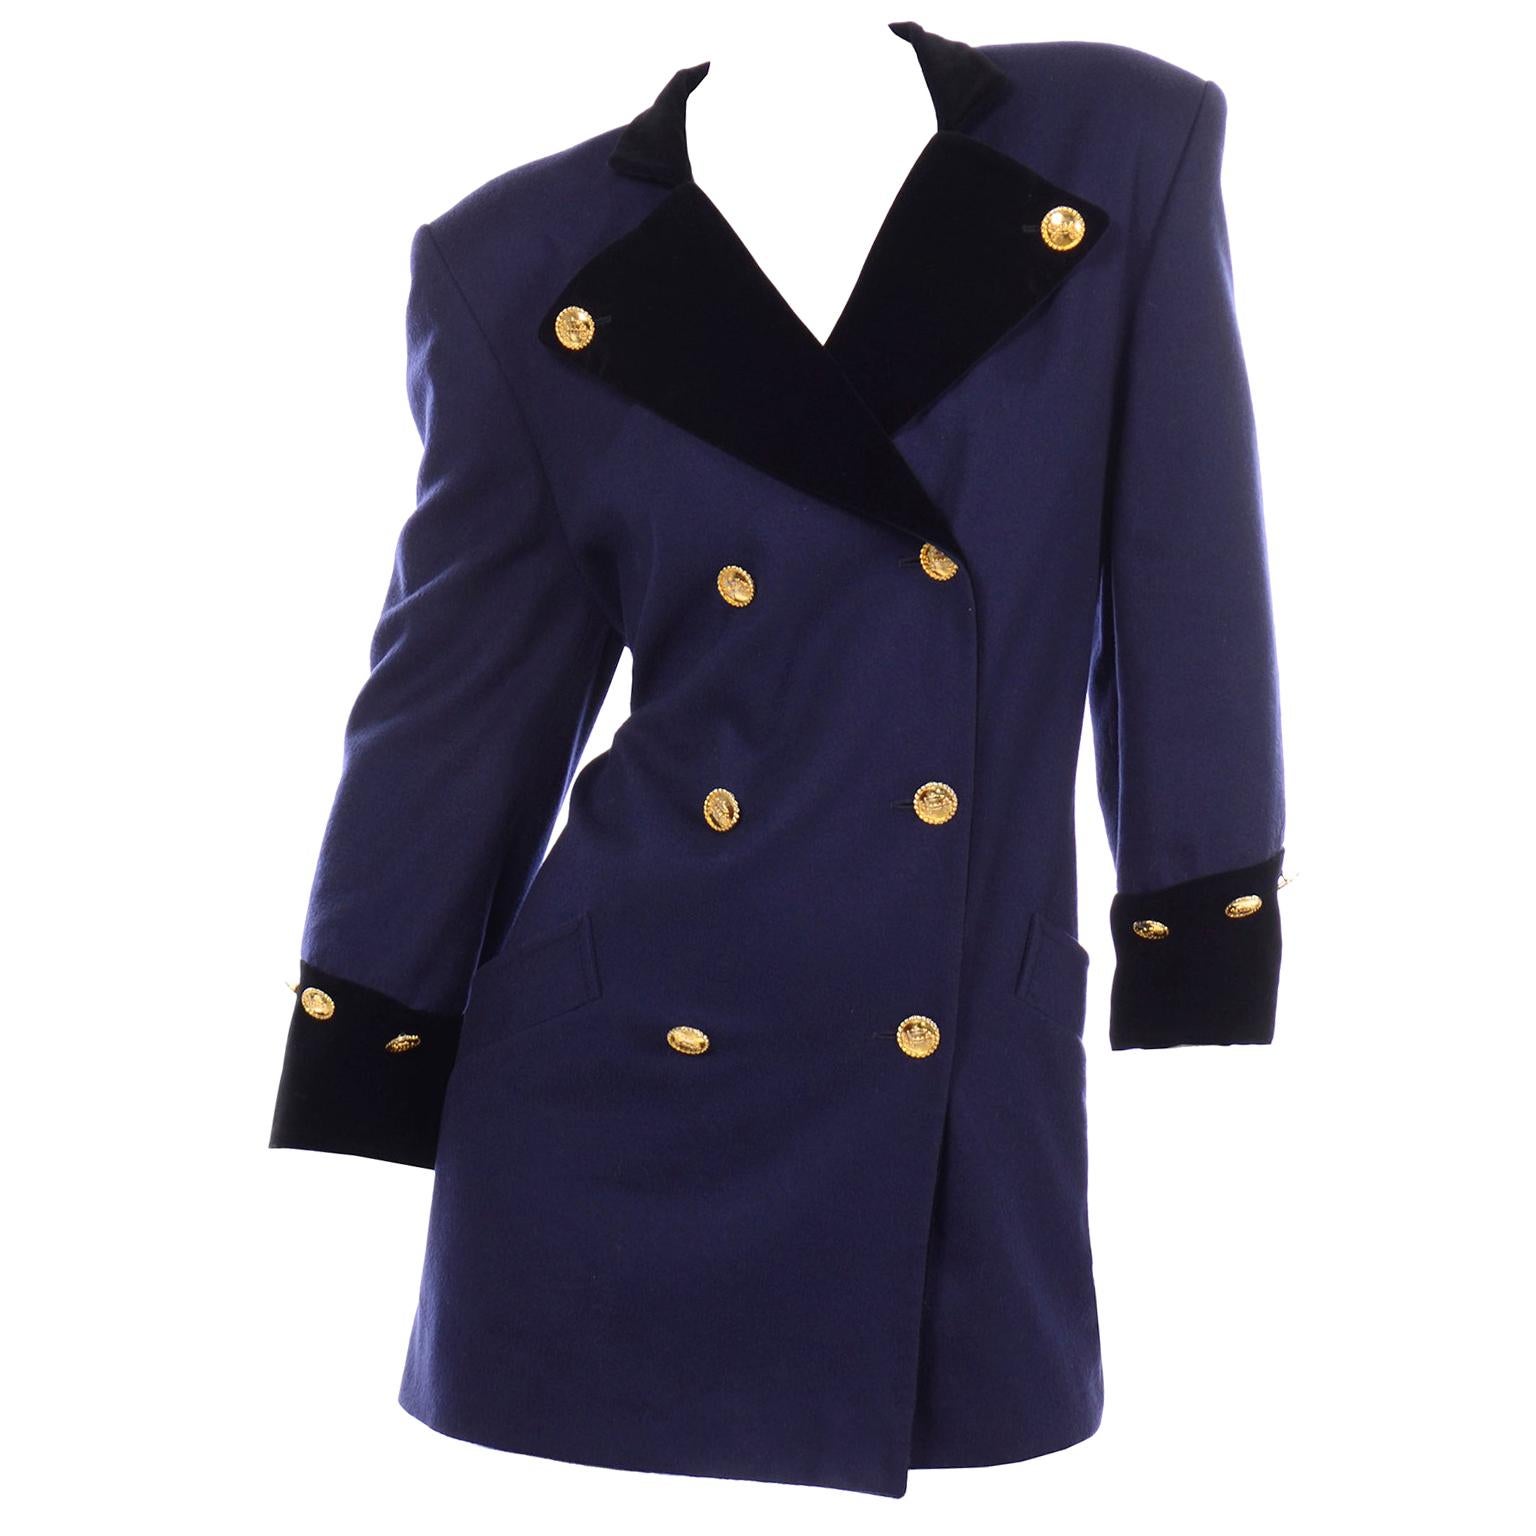 Vintage Escada Blue & Black Long Cashmere Wool Blazer Jacket by Margaretha Ley